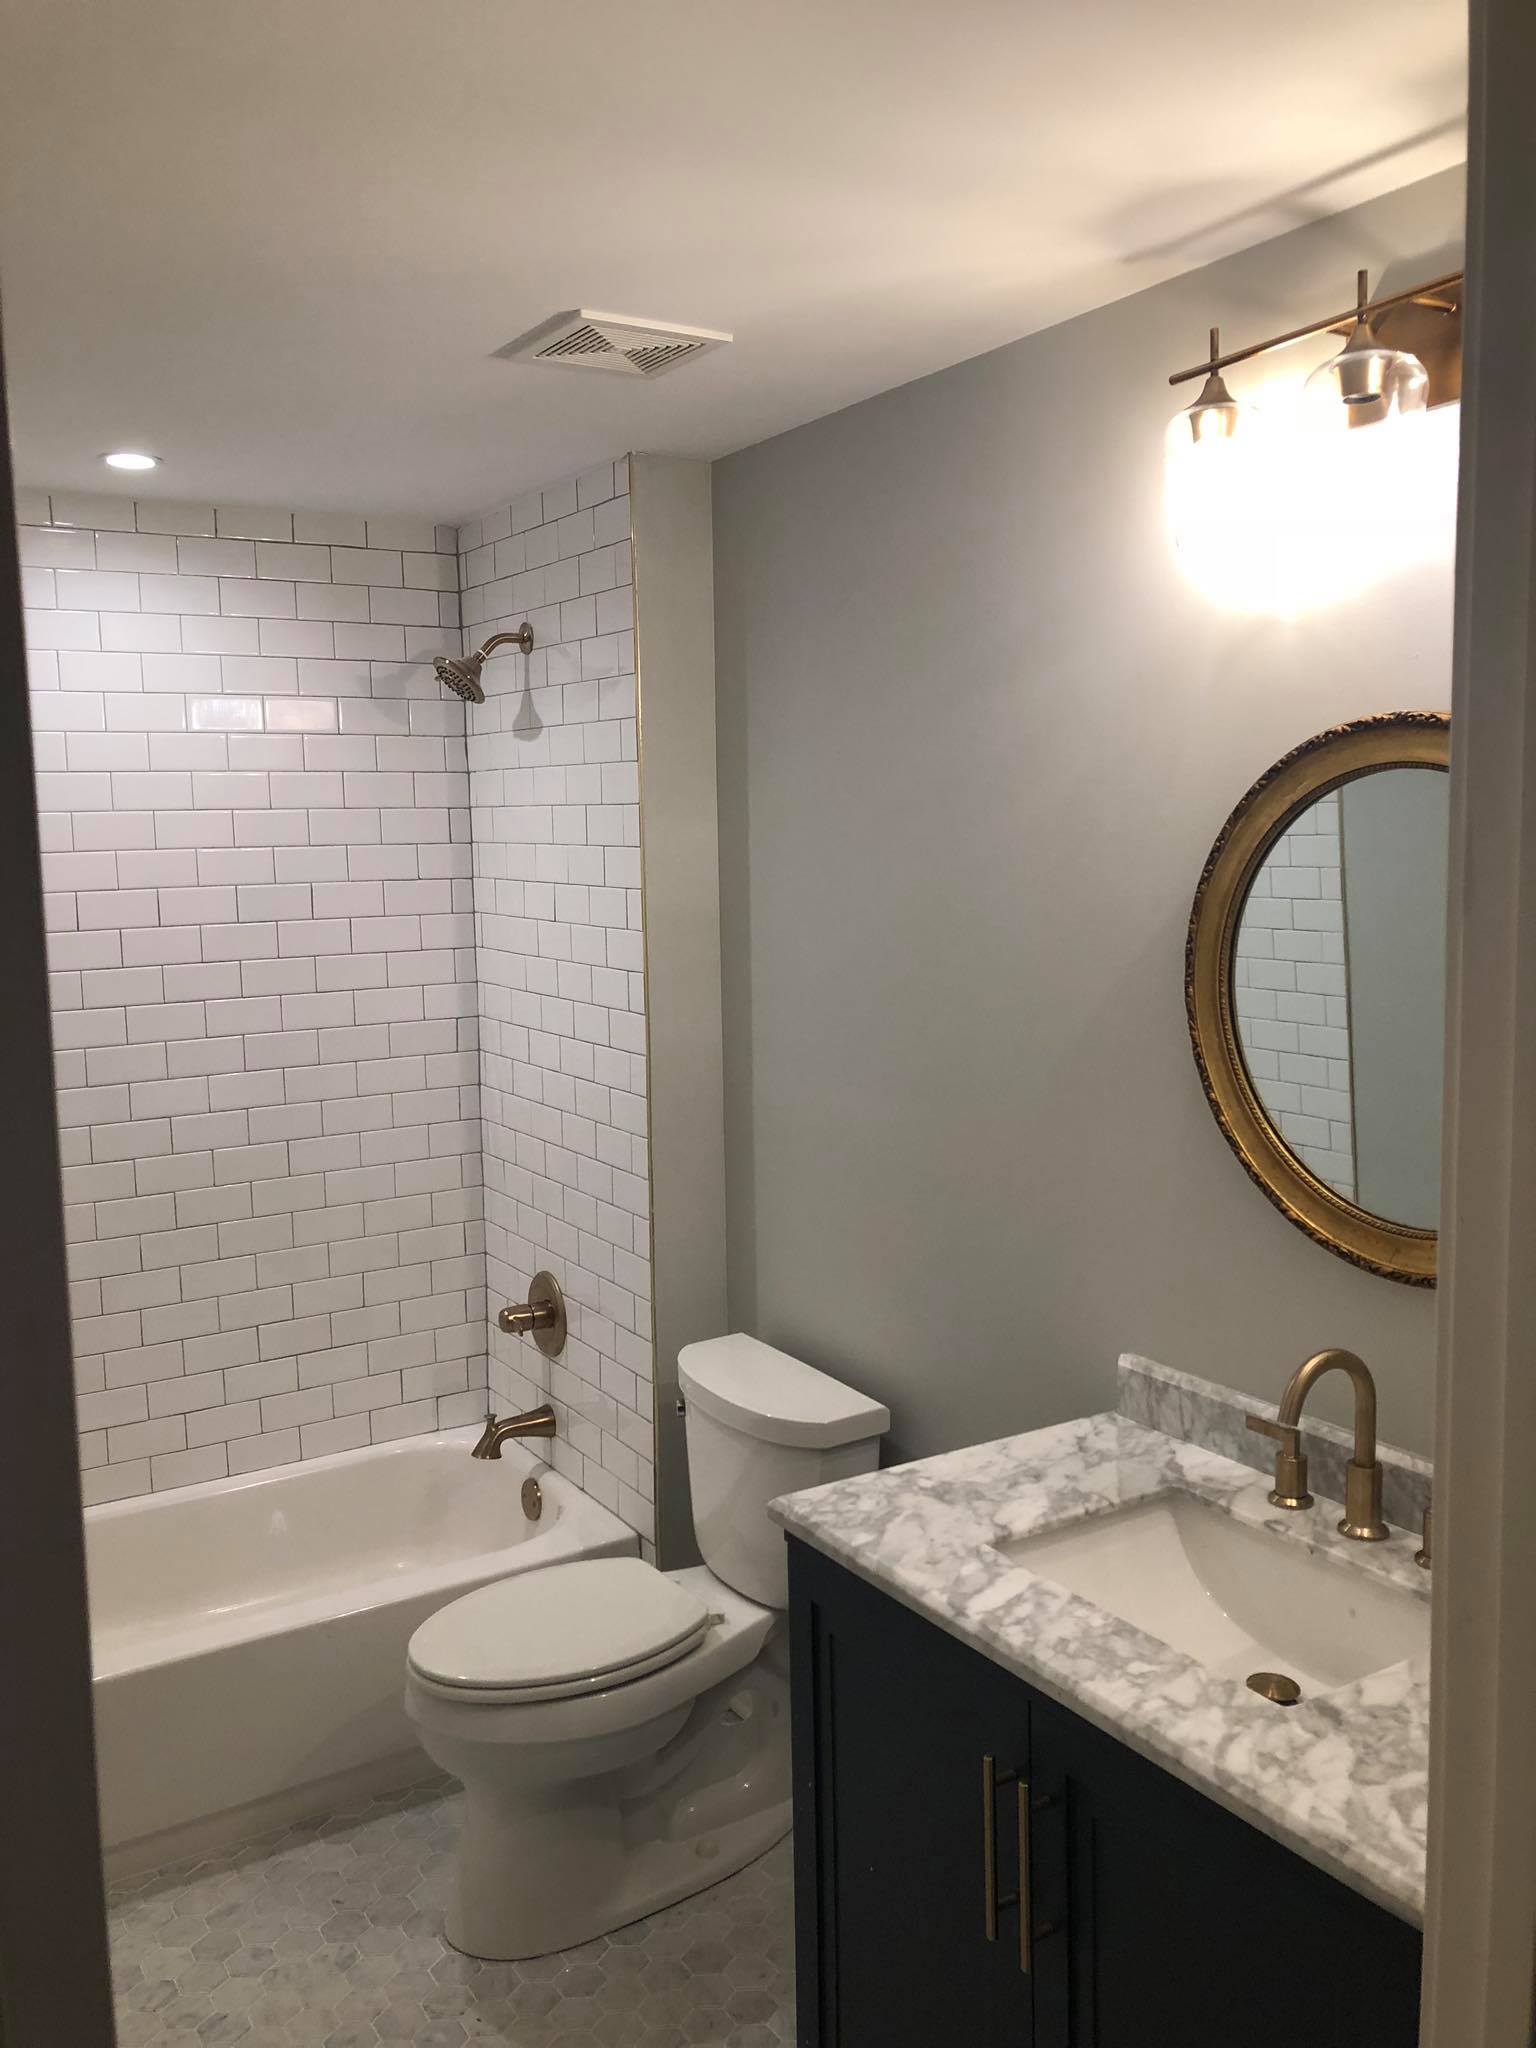 Bathroom Remodel with New Tiles and Double Door Vanity Side View